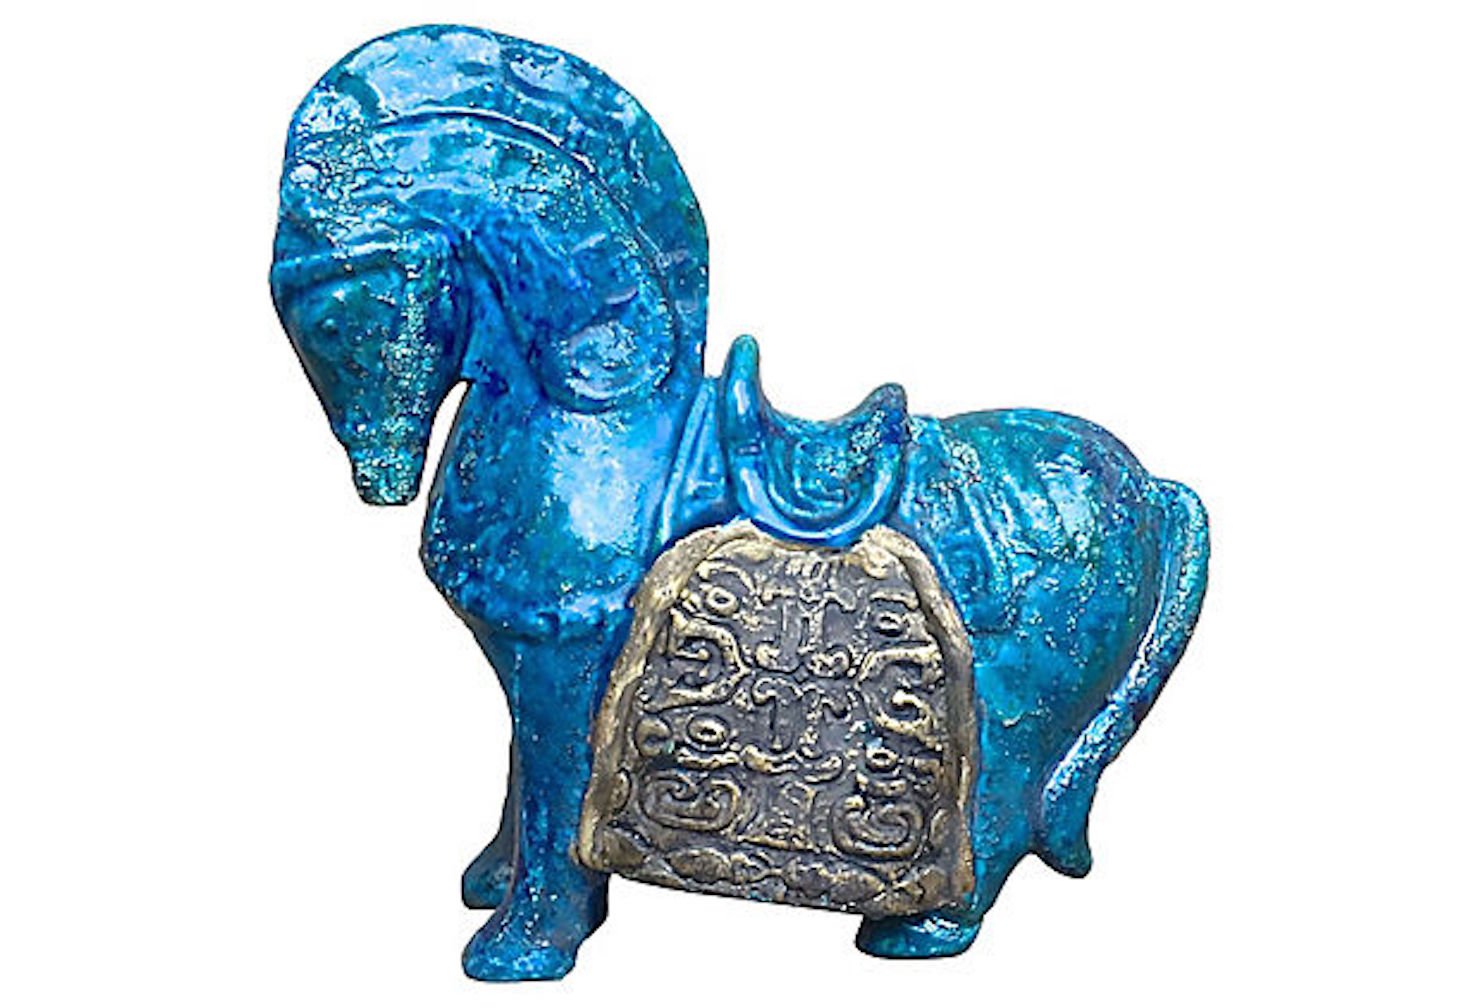 Midcentury Modern Ceramic Horse Figurine~P77550995